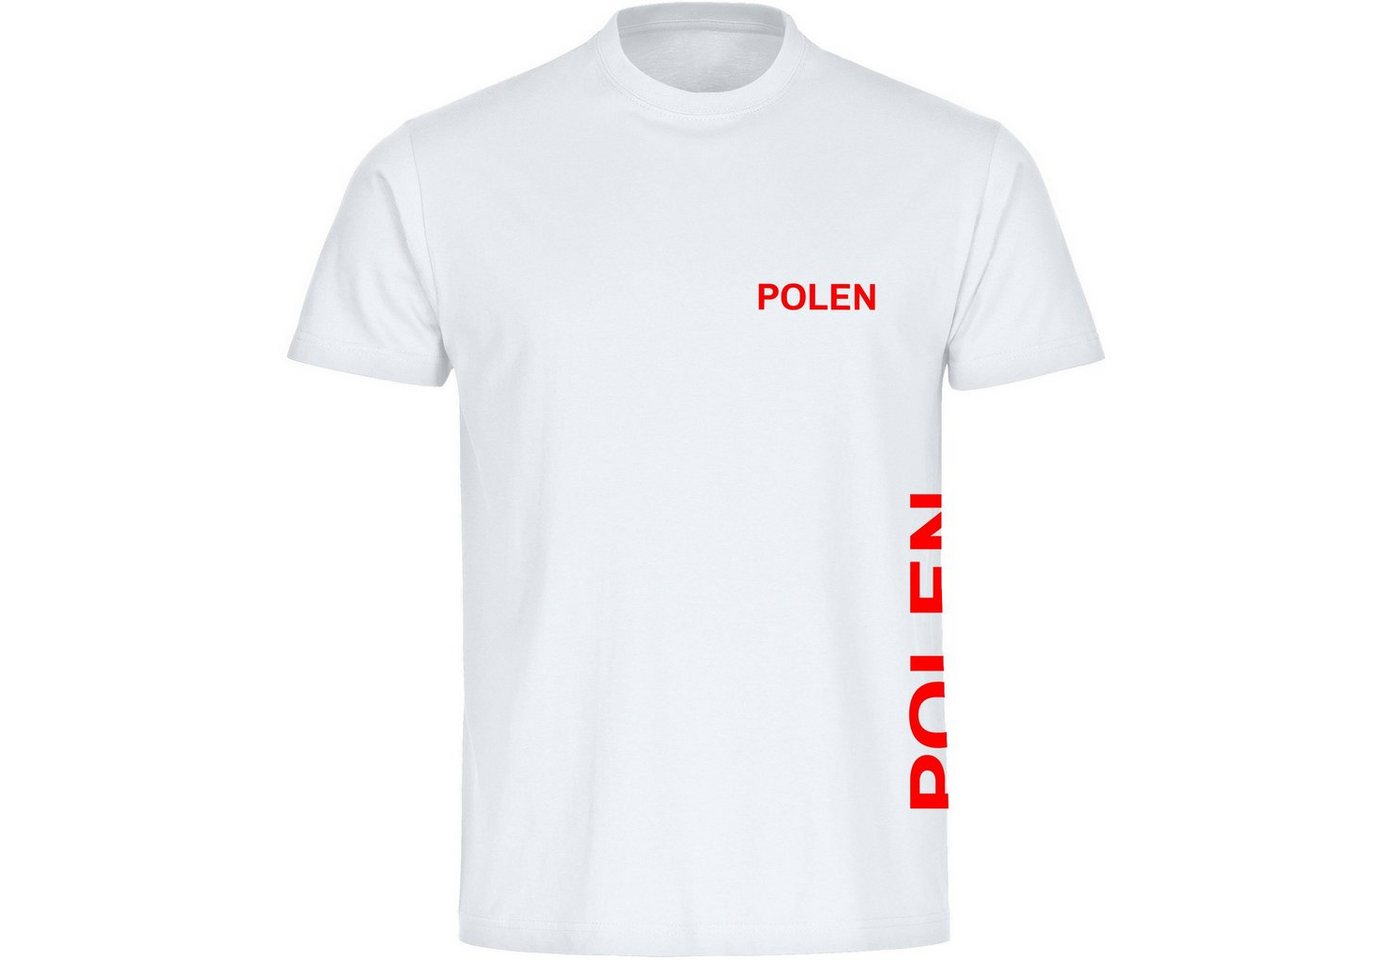 multifanshop T-Shirt Herren Polen - Brust & Seite - Männer von multifanshop